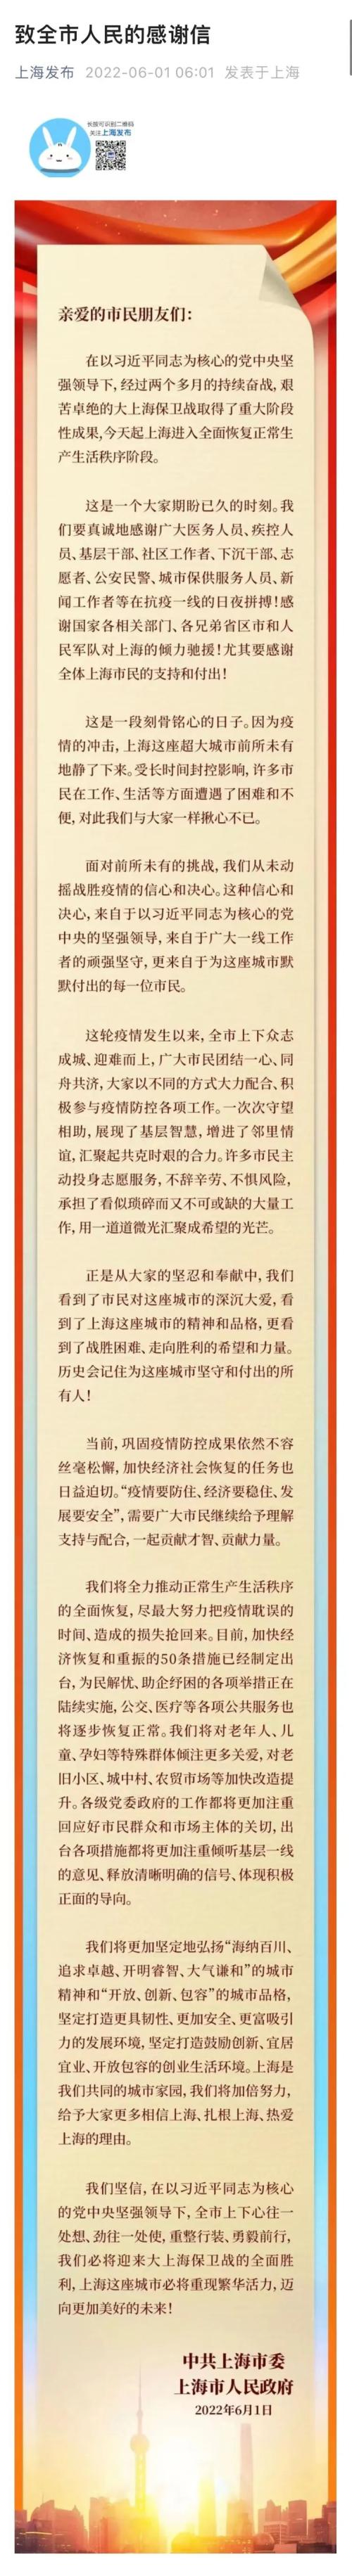 上海发布《致全市人民的感谢信》